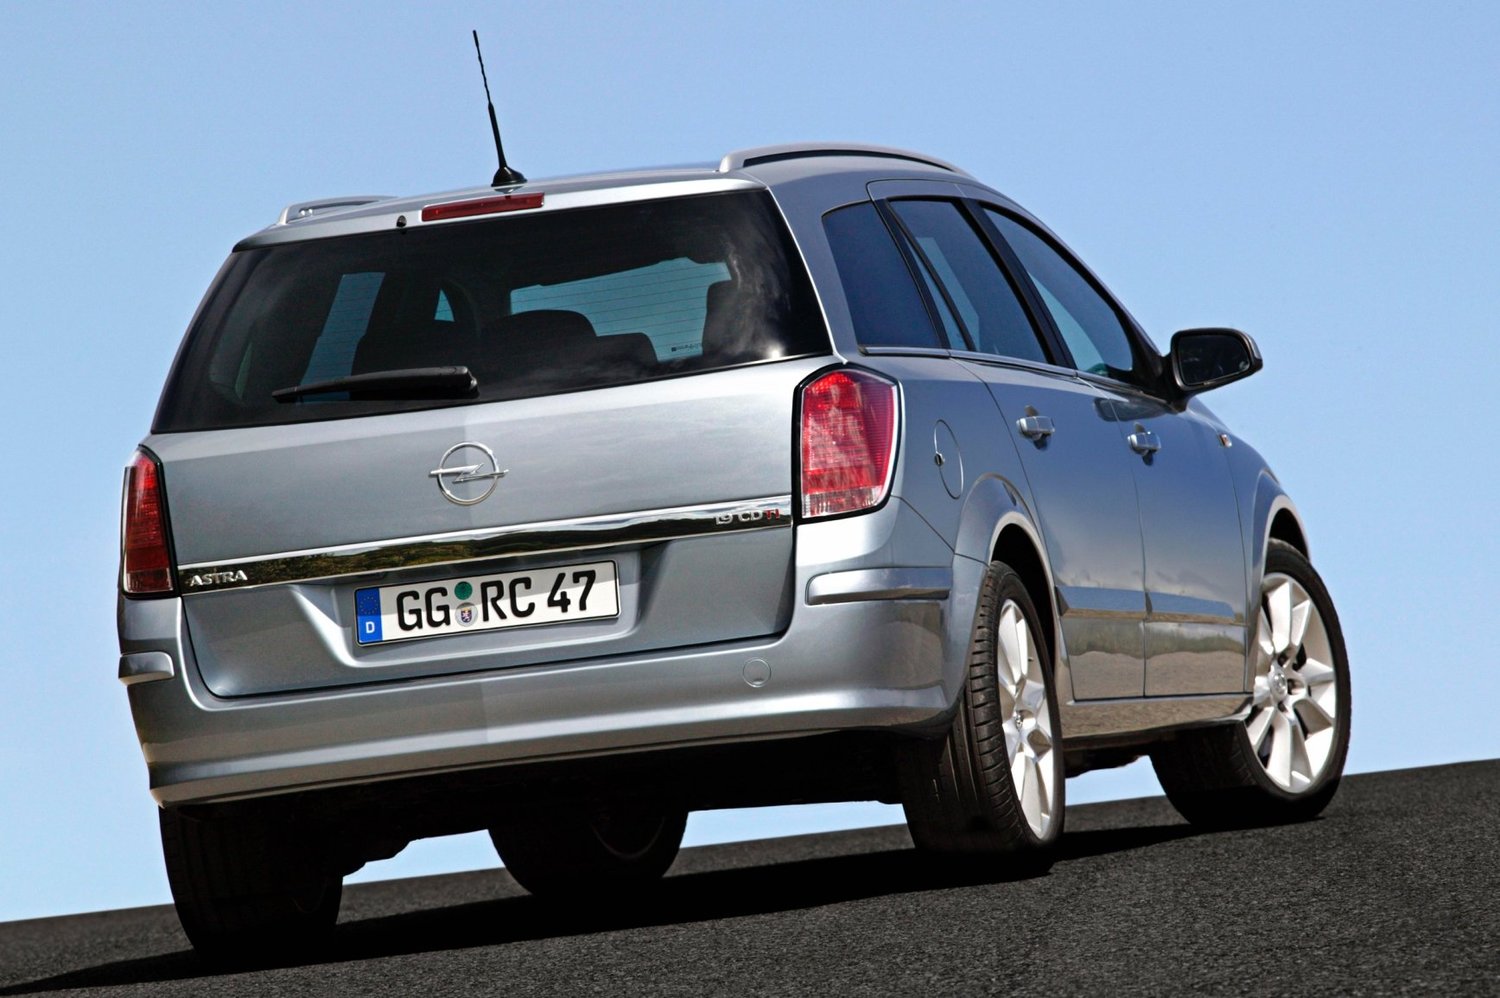 универсал Opel Astra 2004 - 2006г выпуска модификация 1.2 MT (90 л.с.)